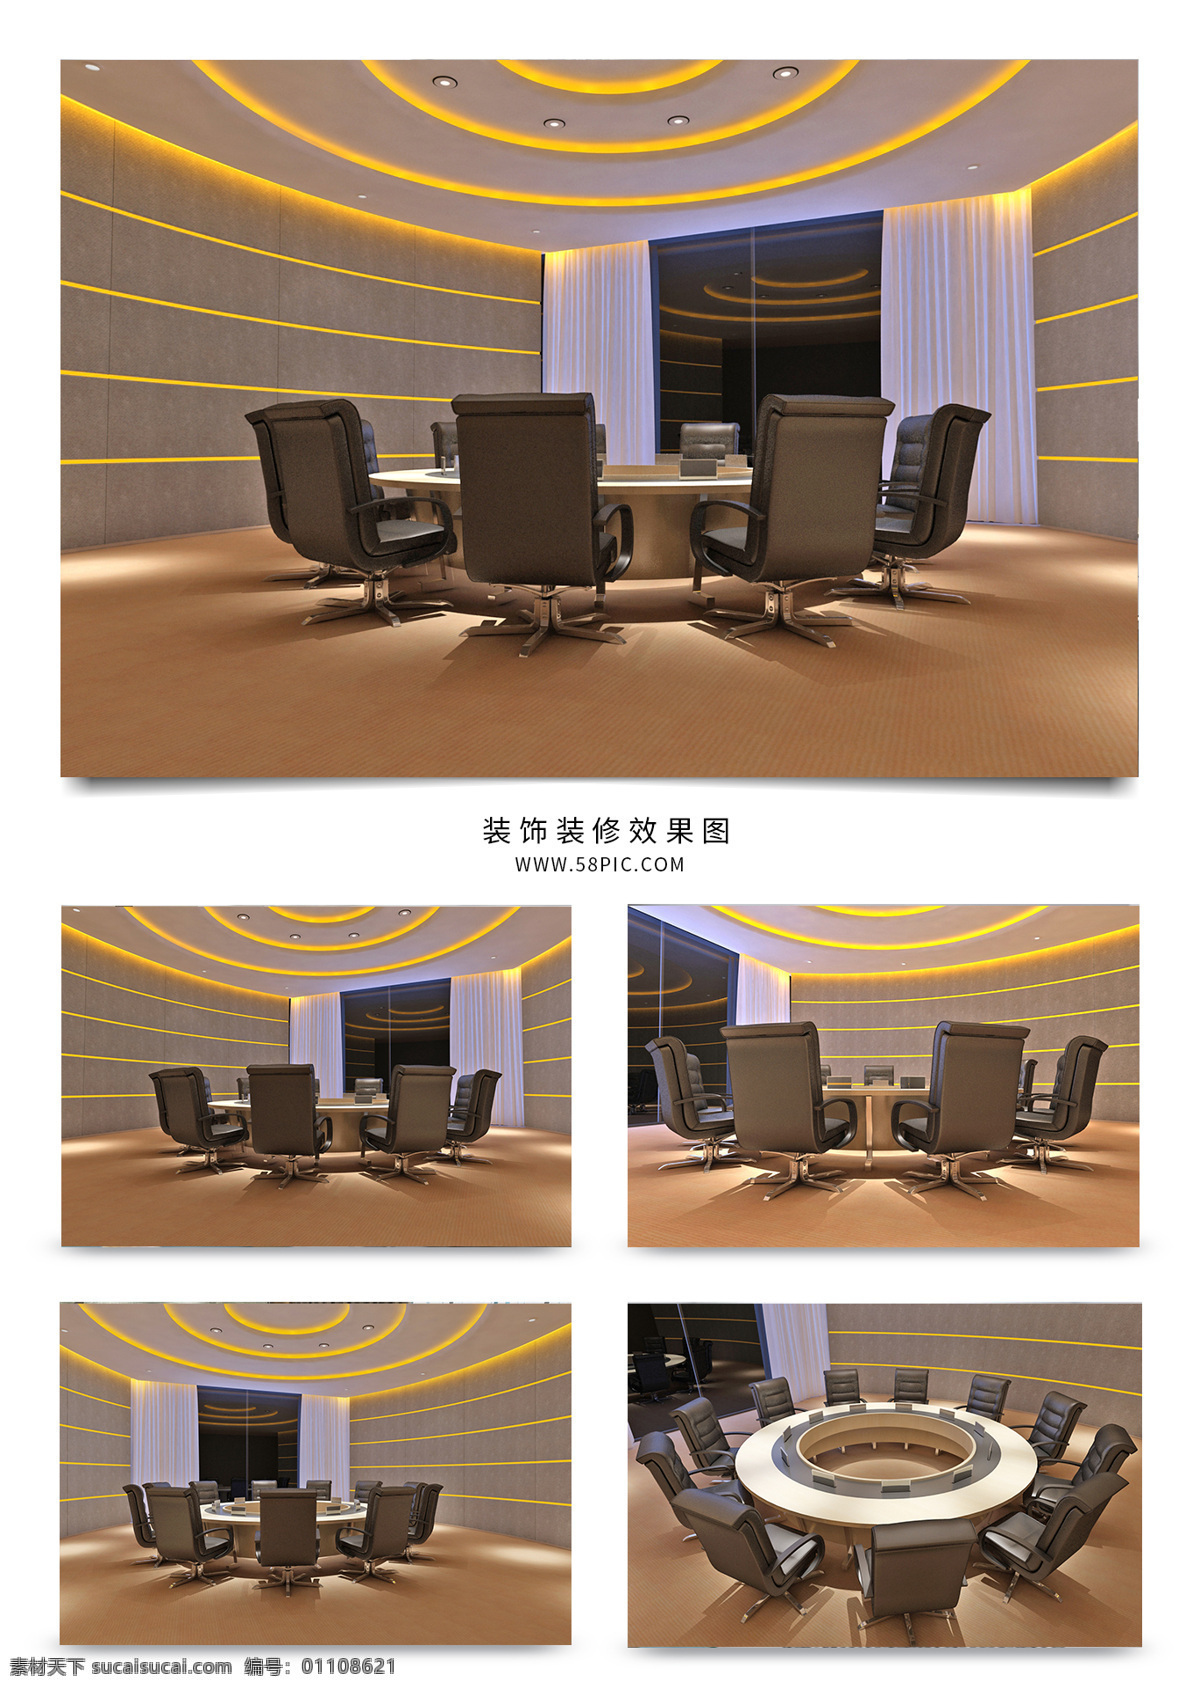 现代 风格 经理 办公室 会议 空间设计 效果图 室内设计 室内装饰 模型 简约 圆形 会议室 工装 灯带